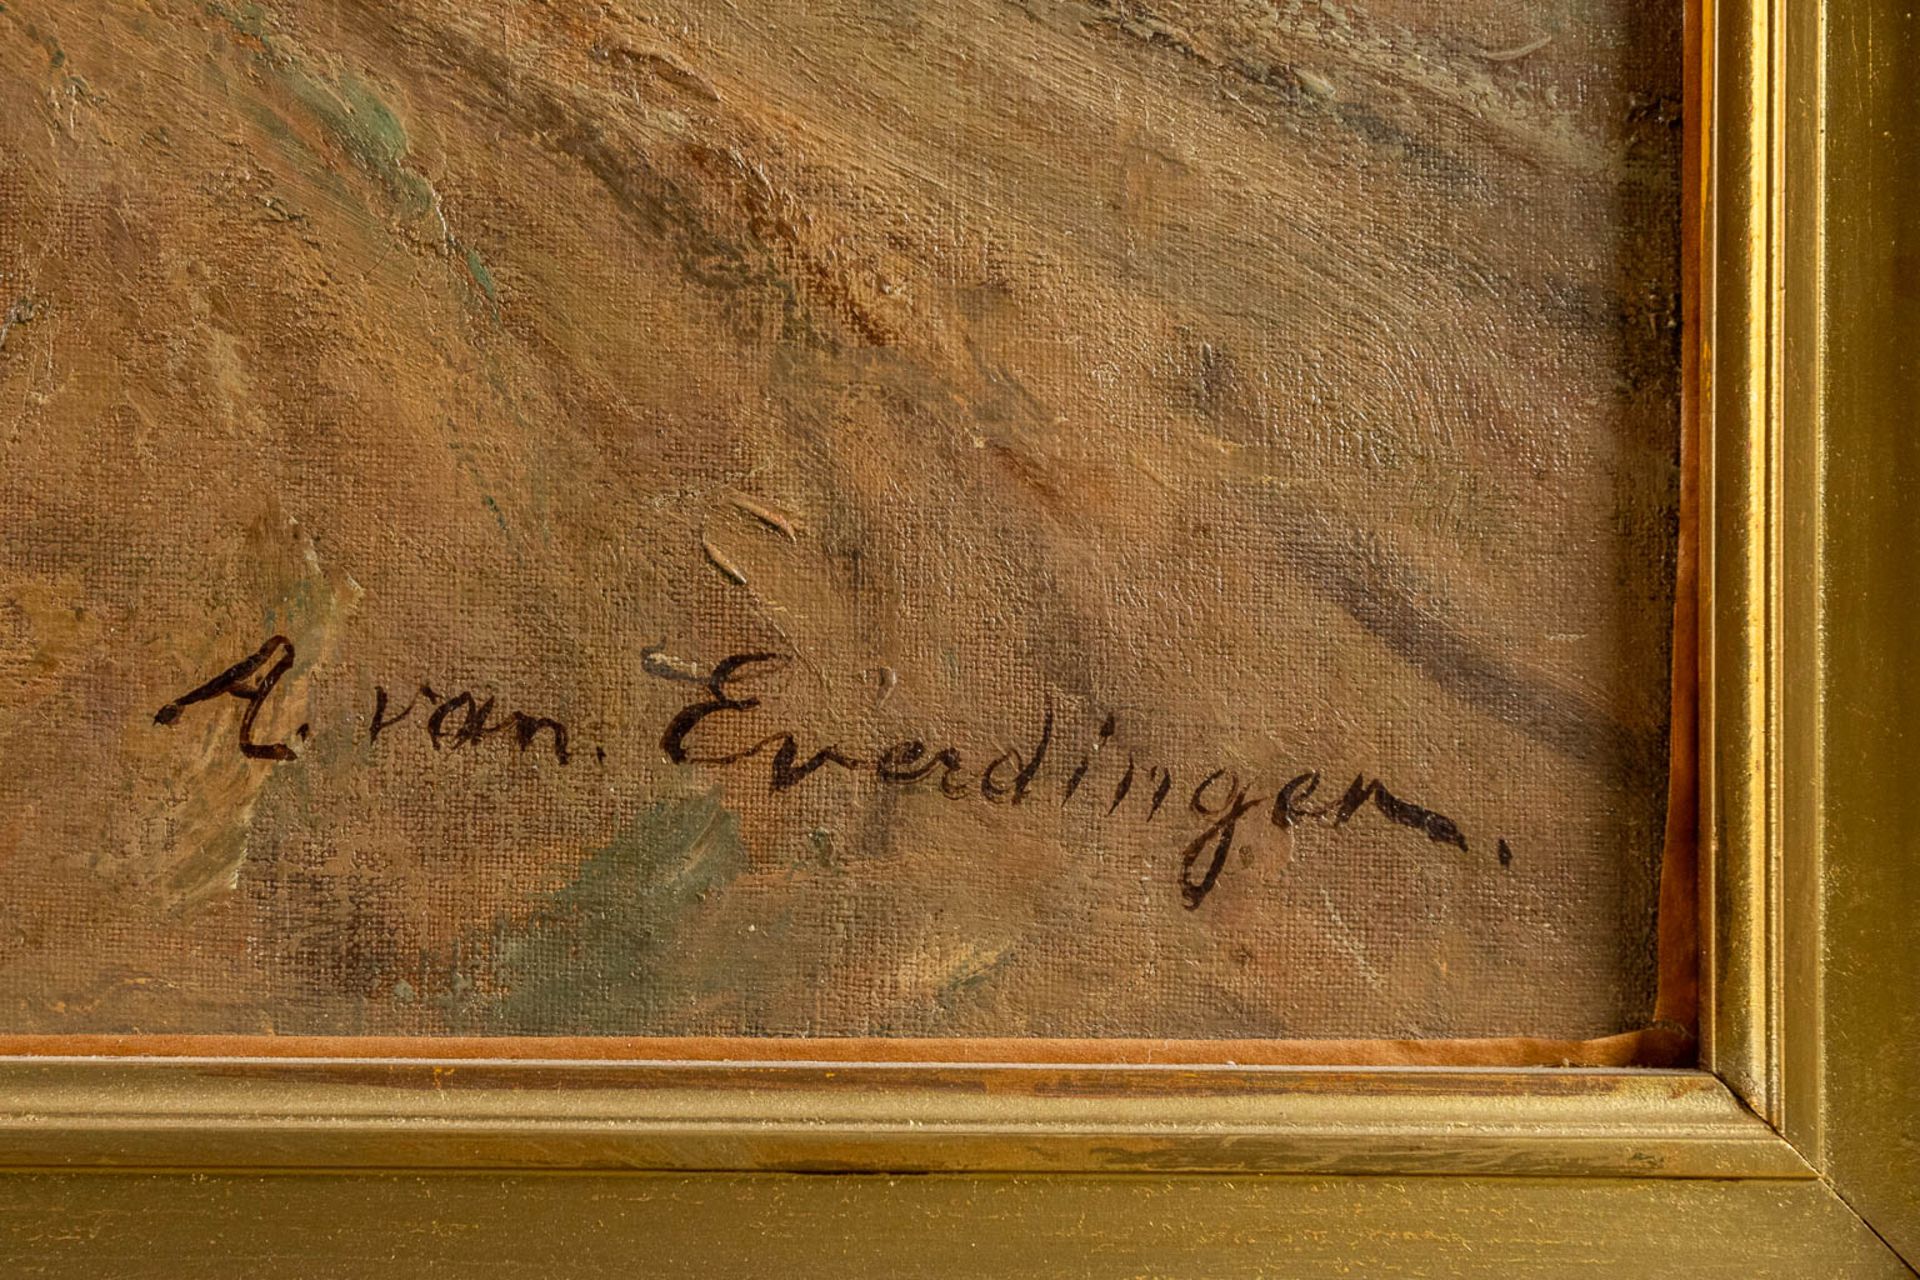 Adriaen VAN EVERDINGEN (1832-1912) 'Village near the river' oil on canvas. (W:171 x H:90 cm) - Image 7 of 8